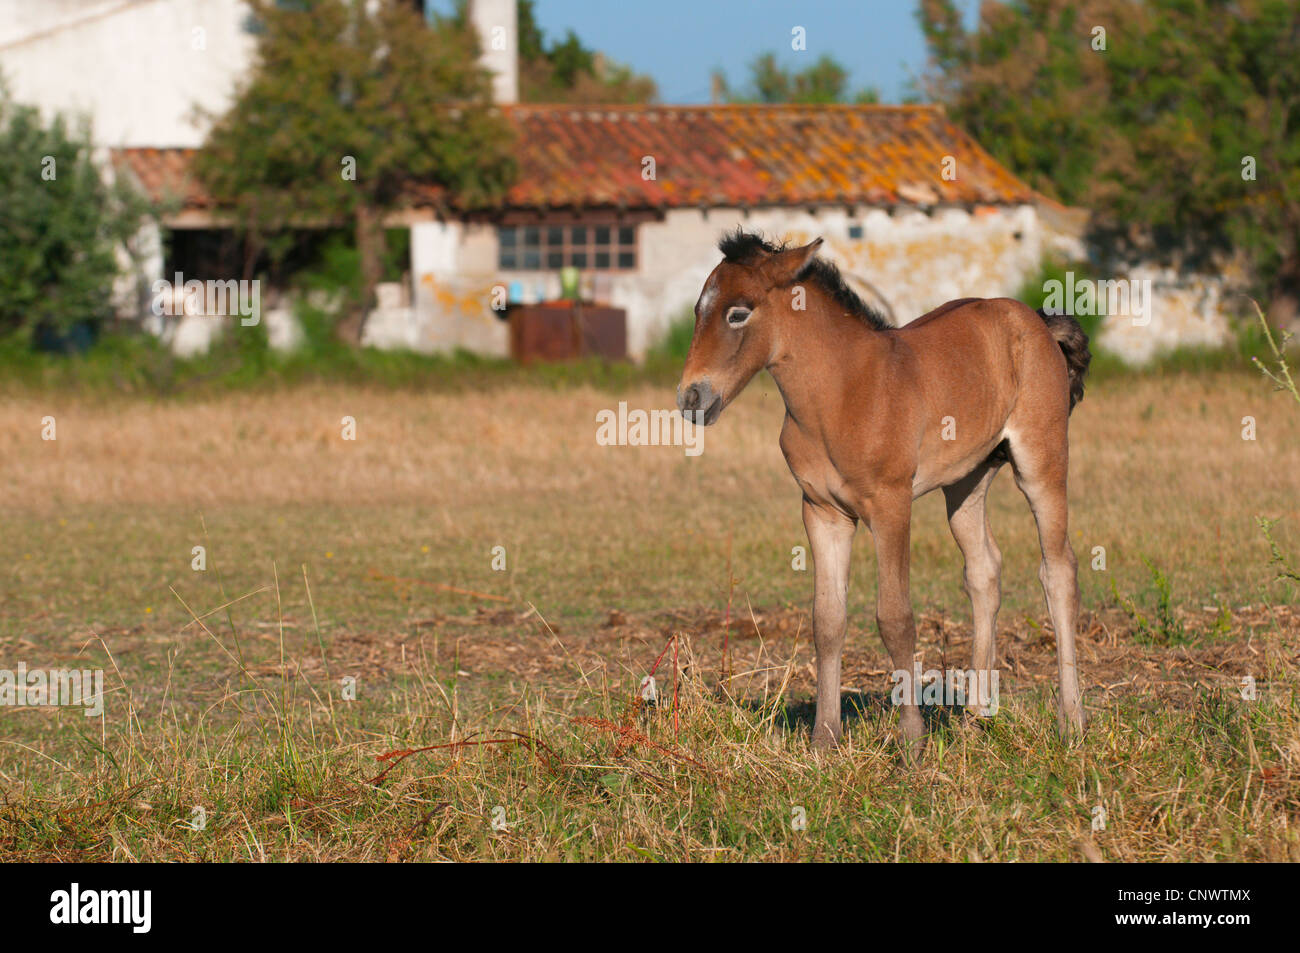 Cheval de Camargue (Equus caballus przewalskii. f), poulain debout sur un pâturage, France, Camargue Banque D'Images